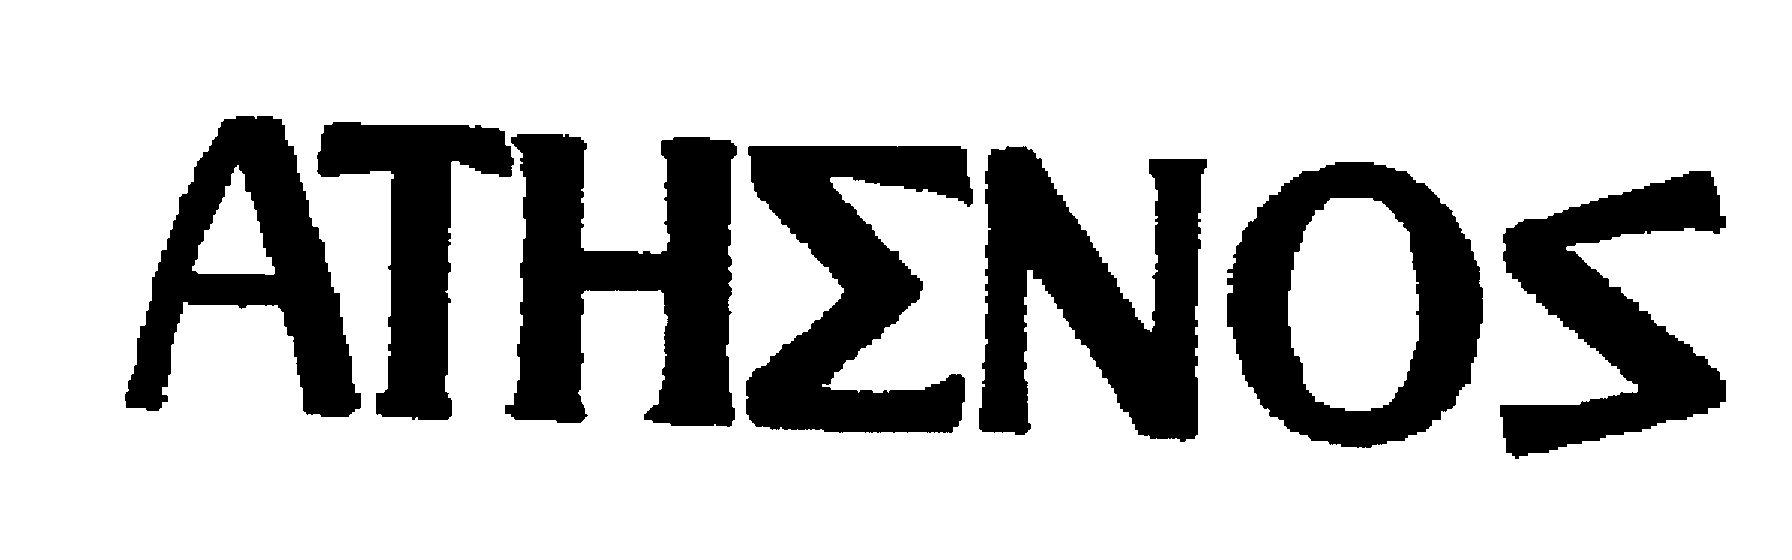 Trademark Logo ATHENOS